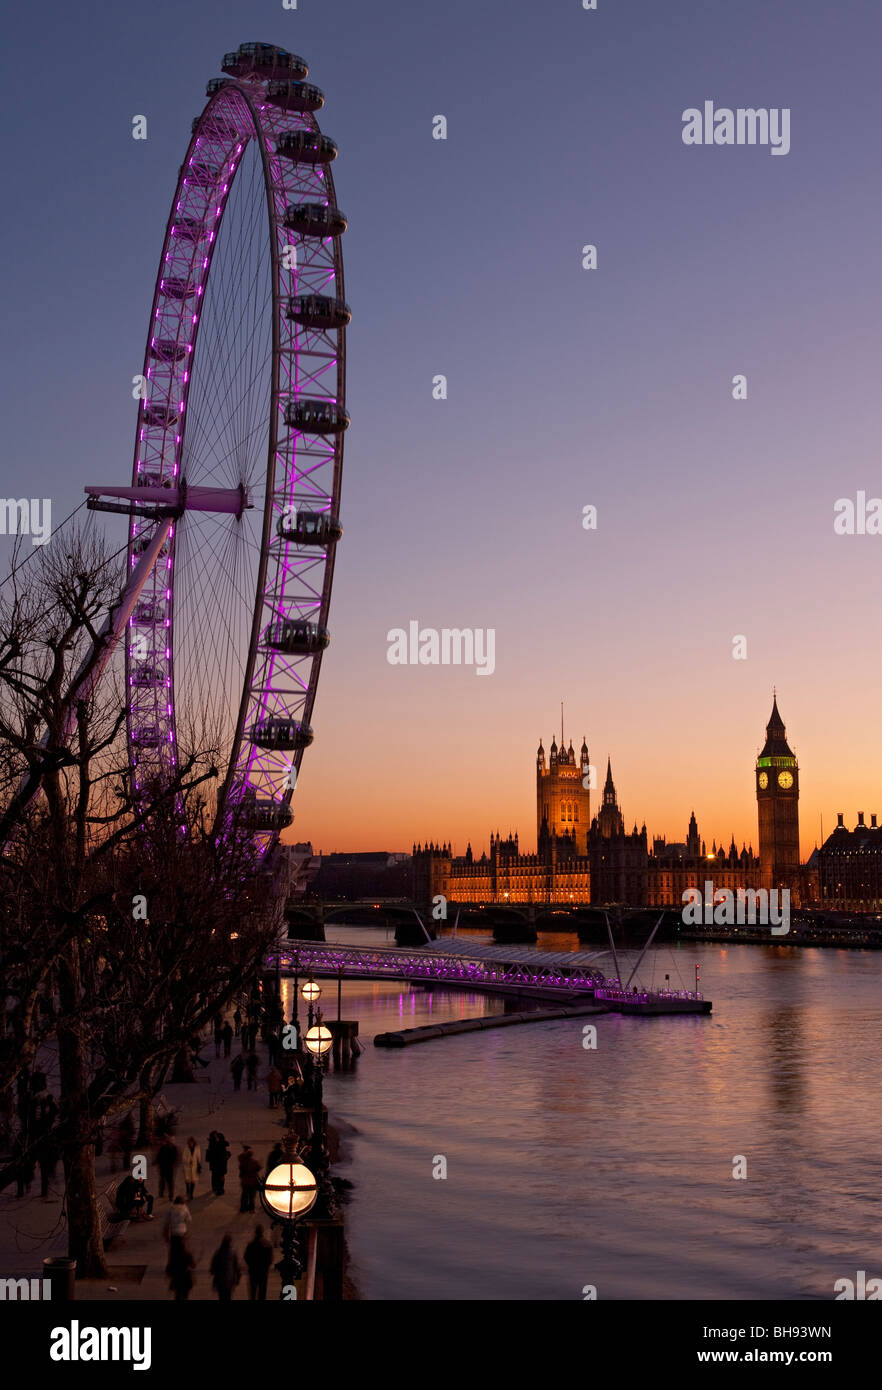 Millennium Wheel, Thames di Fiume Big Ben e le camere del parlamento di notte da South Bank di Londra, Inghilterra, Europa Foto Stock